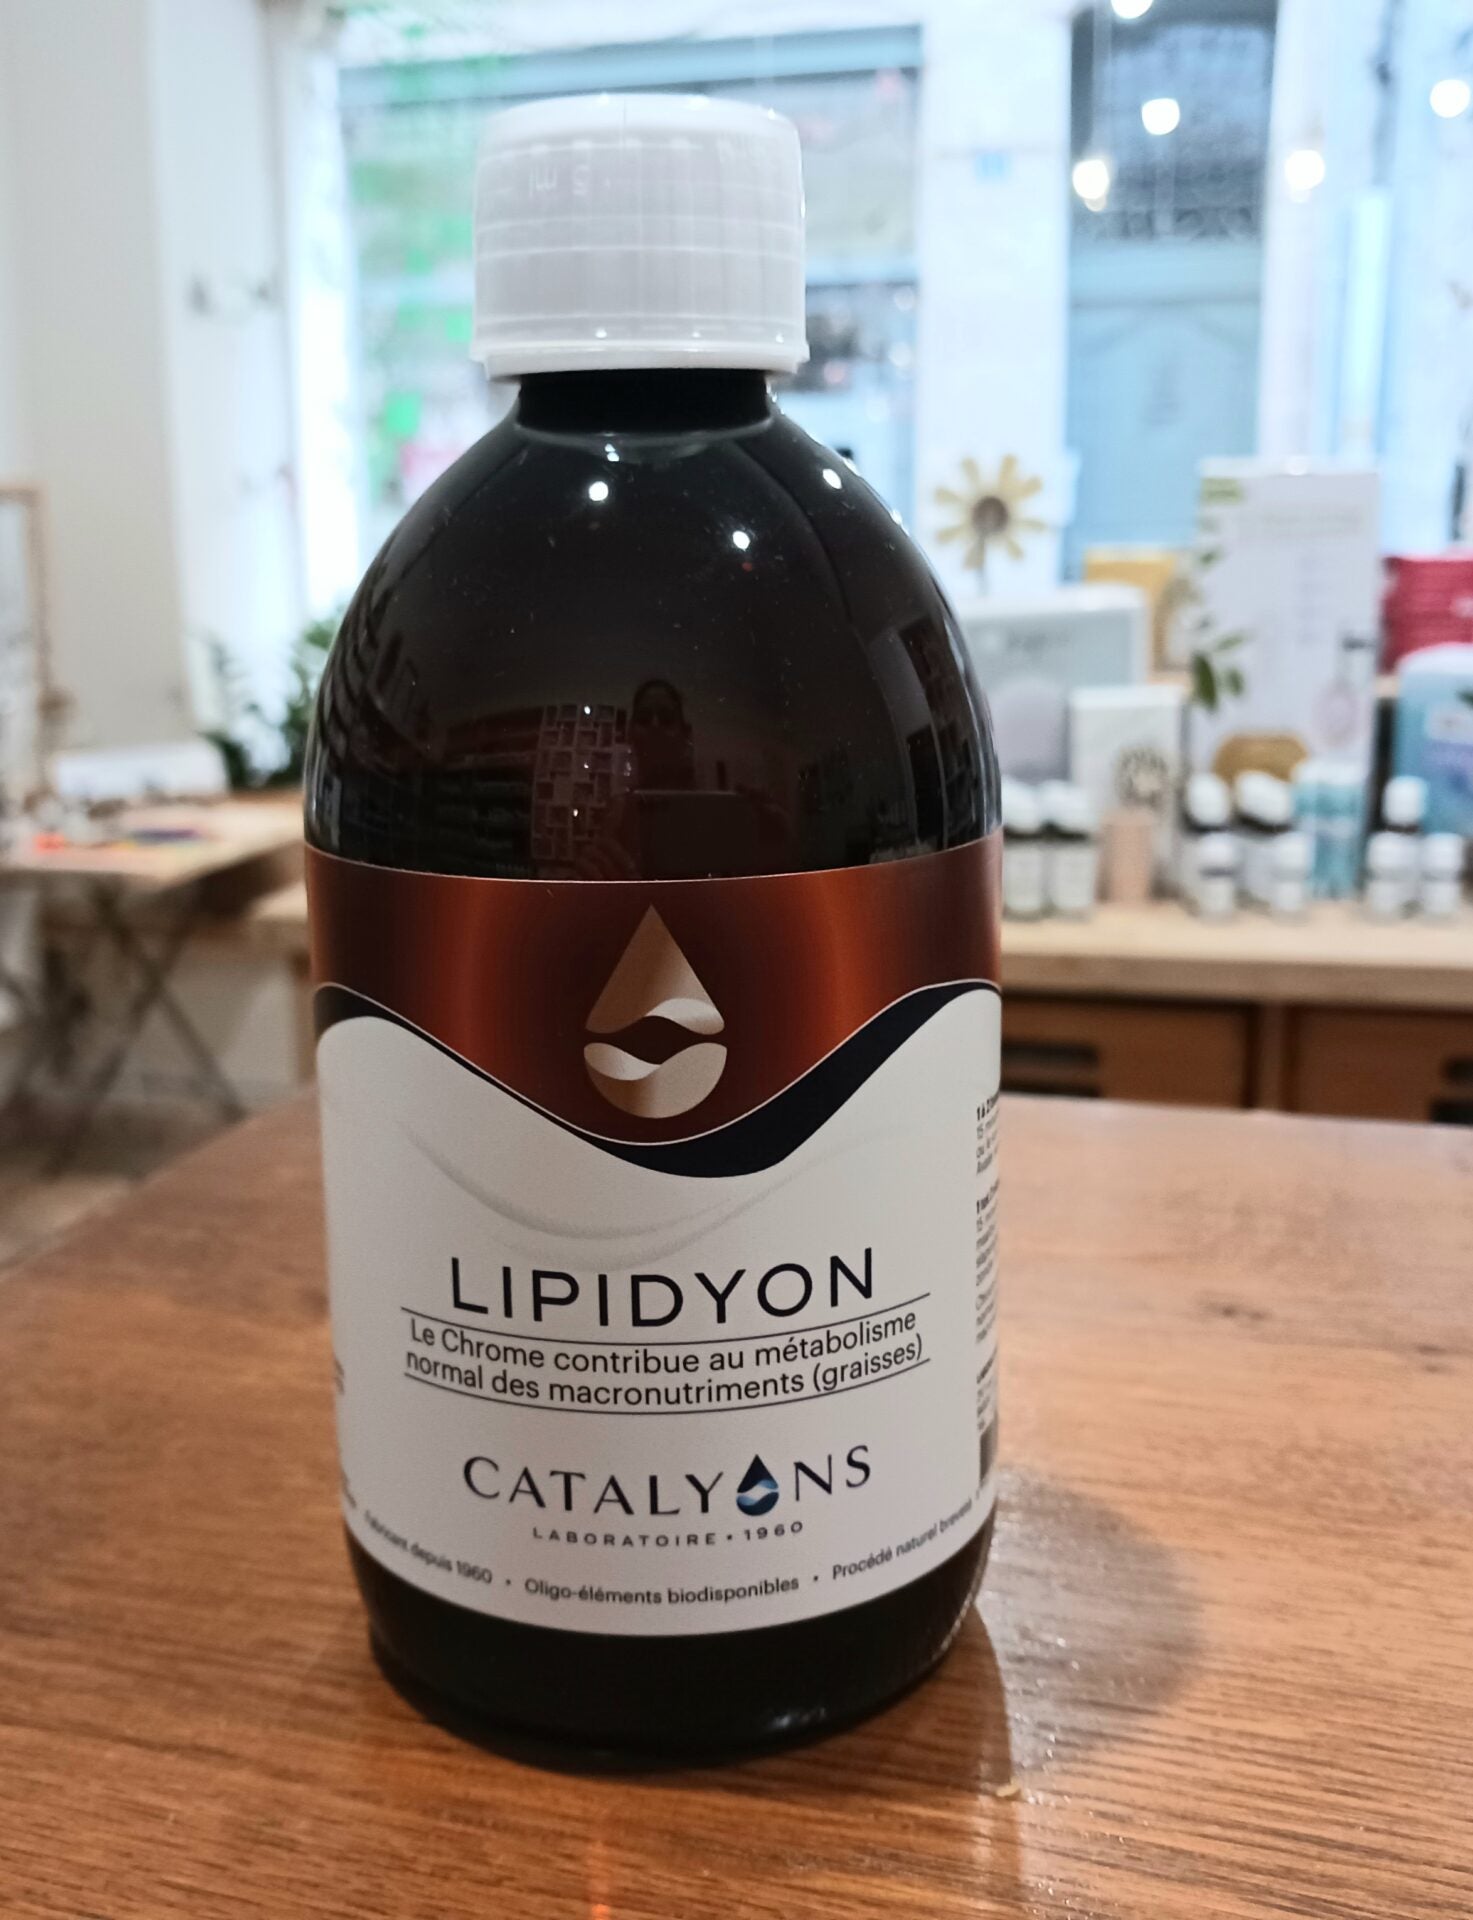 Lipidyon